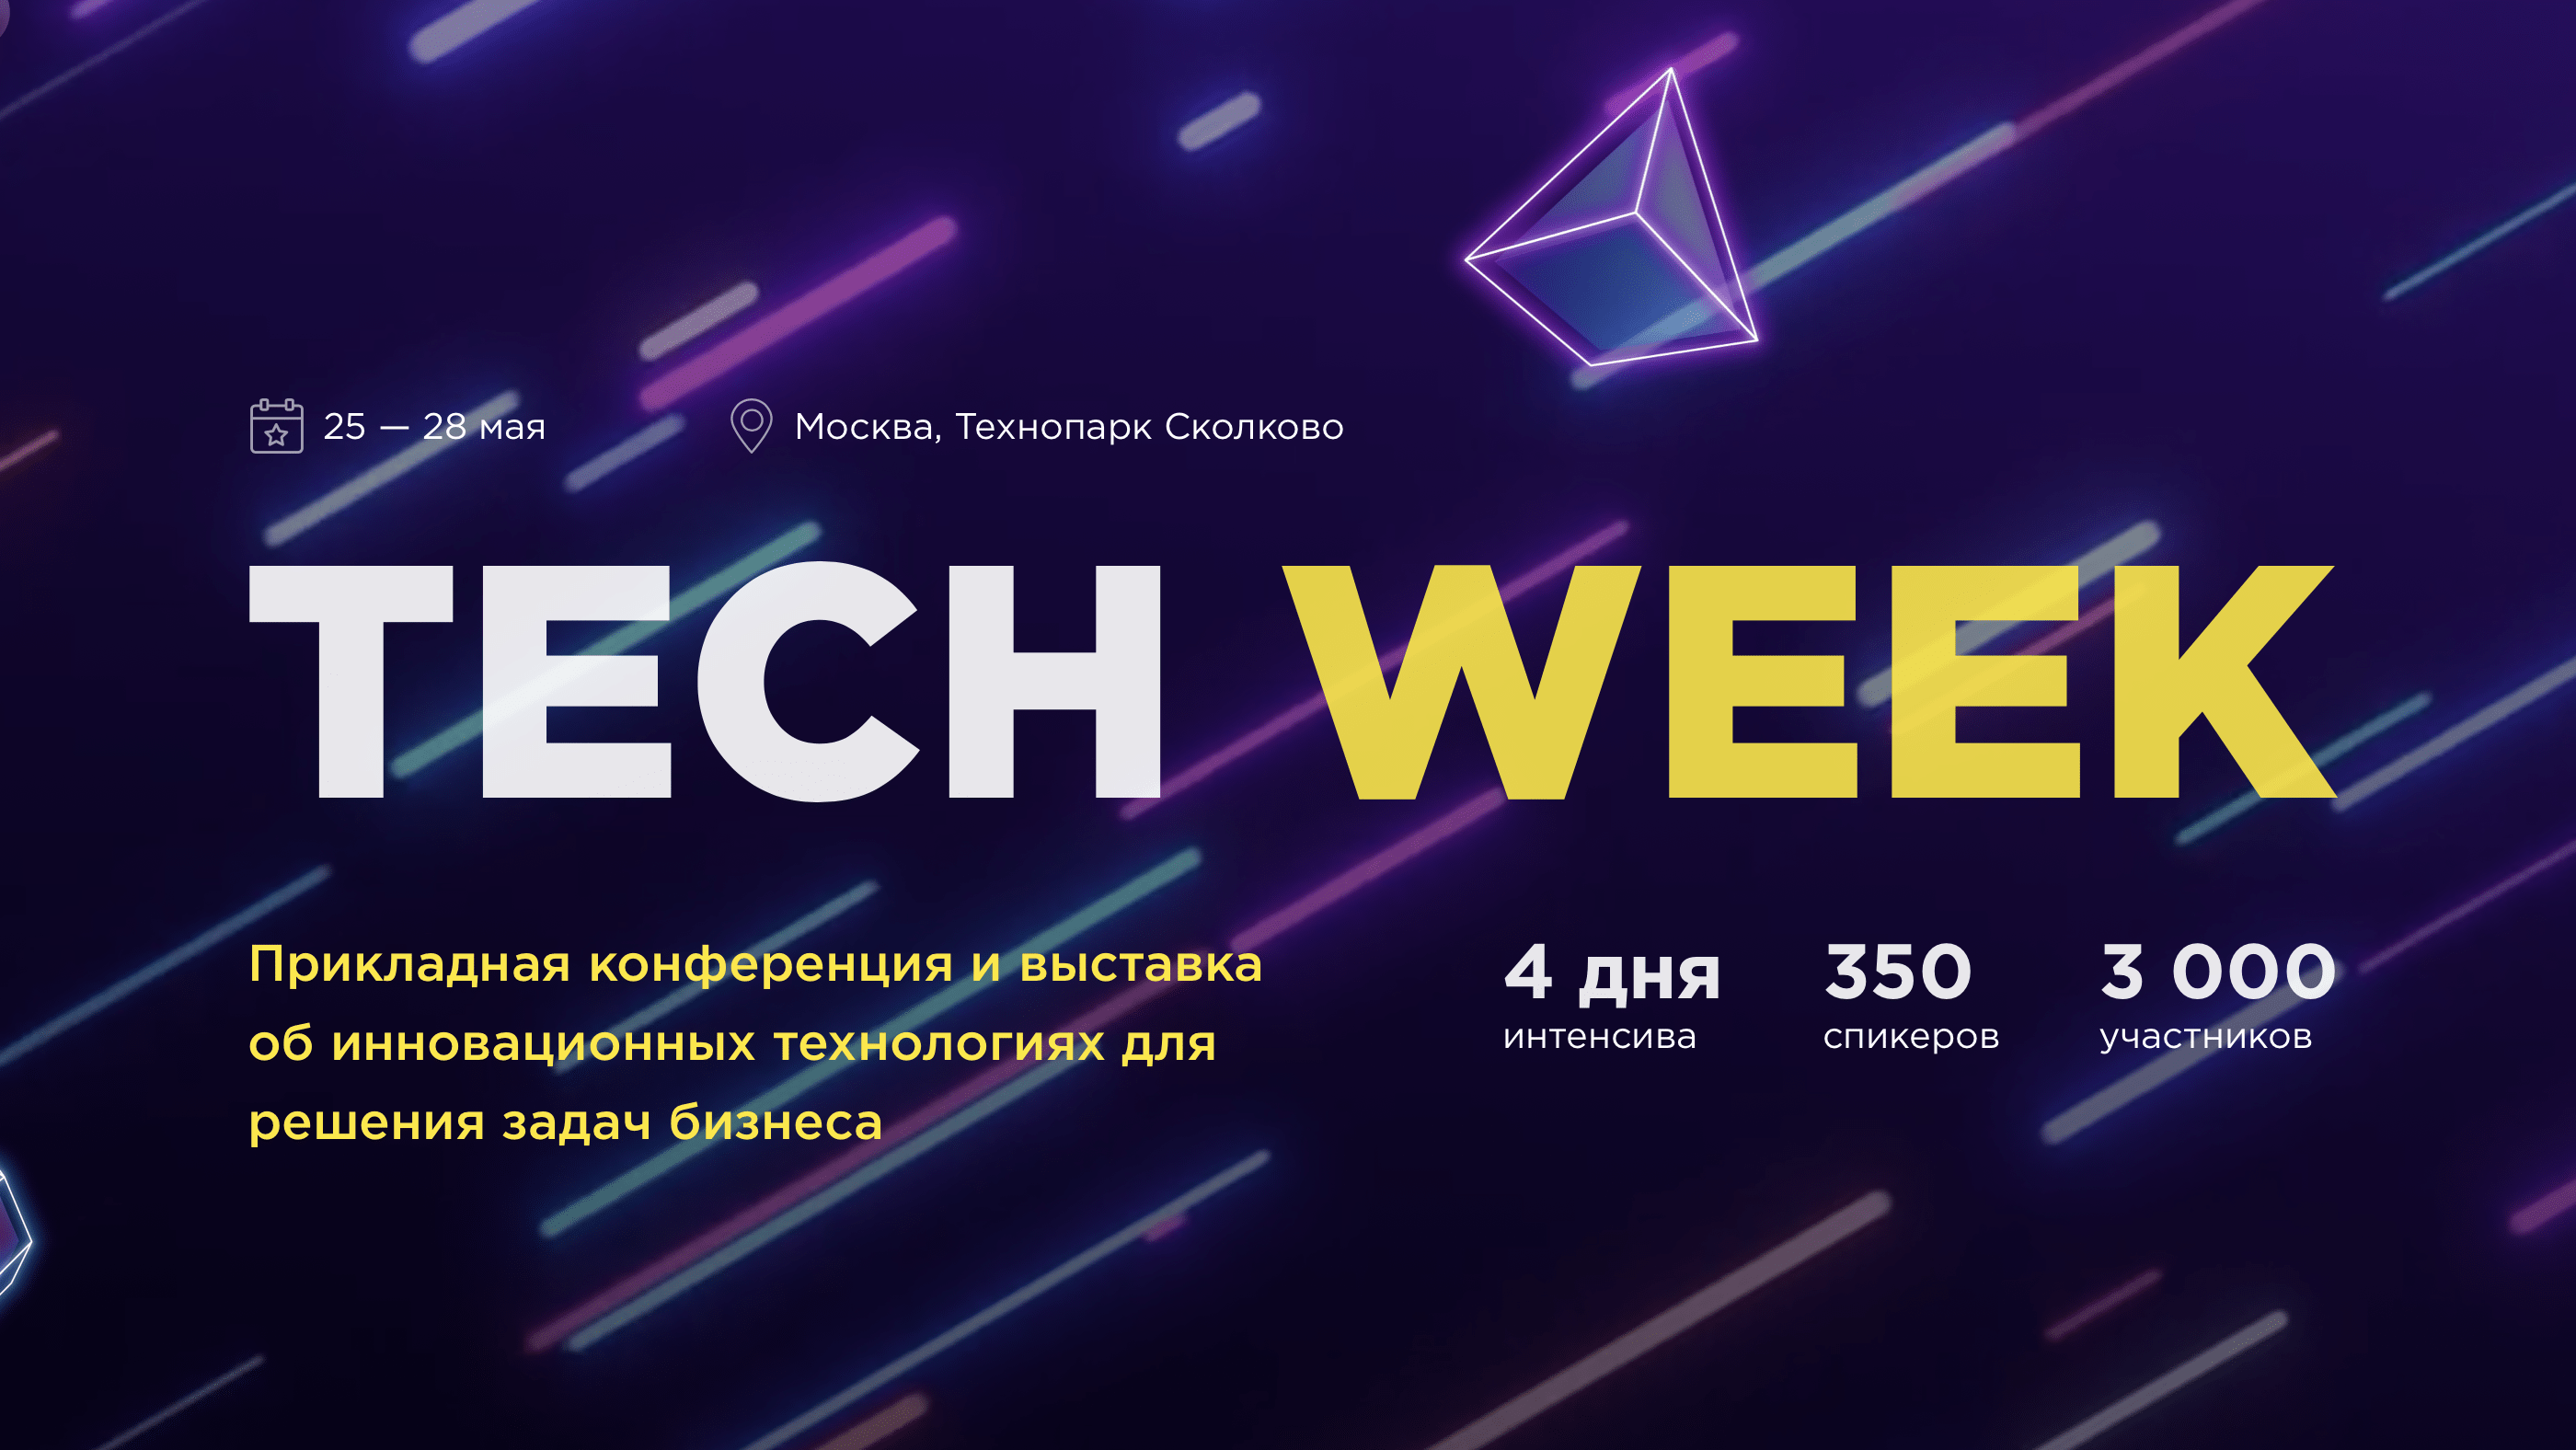 Tech Week 2020 — технологии бизнеса